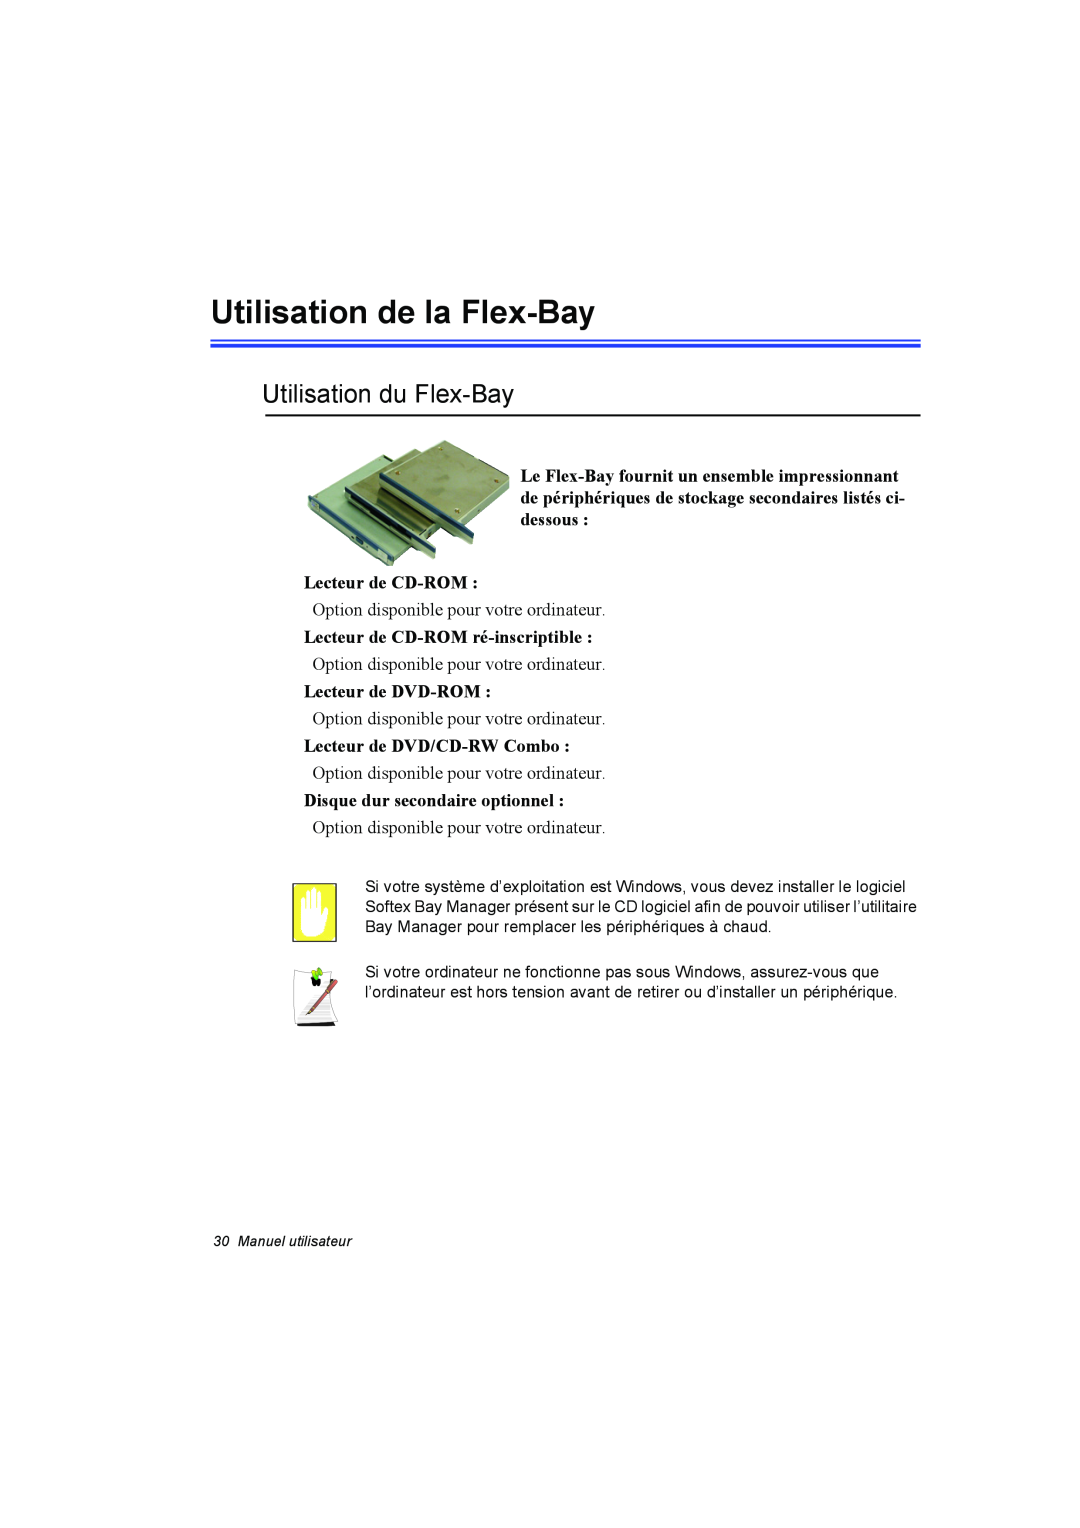 Samsung NP10FP00N7/SEF manual Utilisation de la Flex-Bay, Utilisation du Flex-Bay, Lecteur de CD-ROM, Lecteur de DVD-ROM 